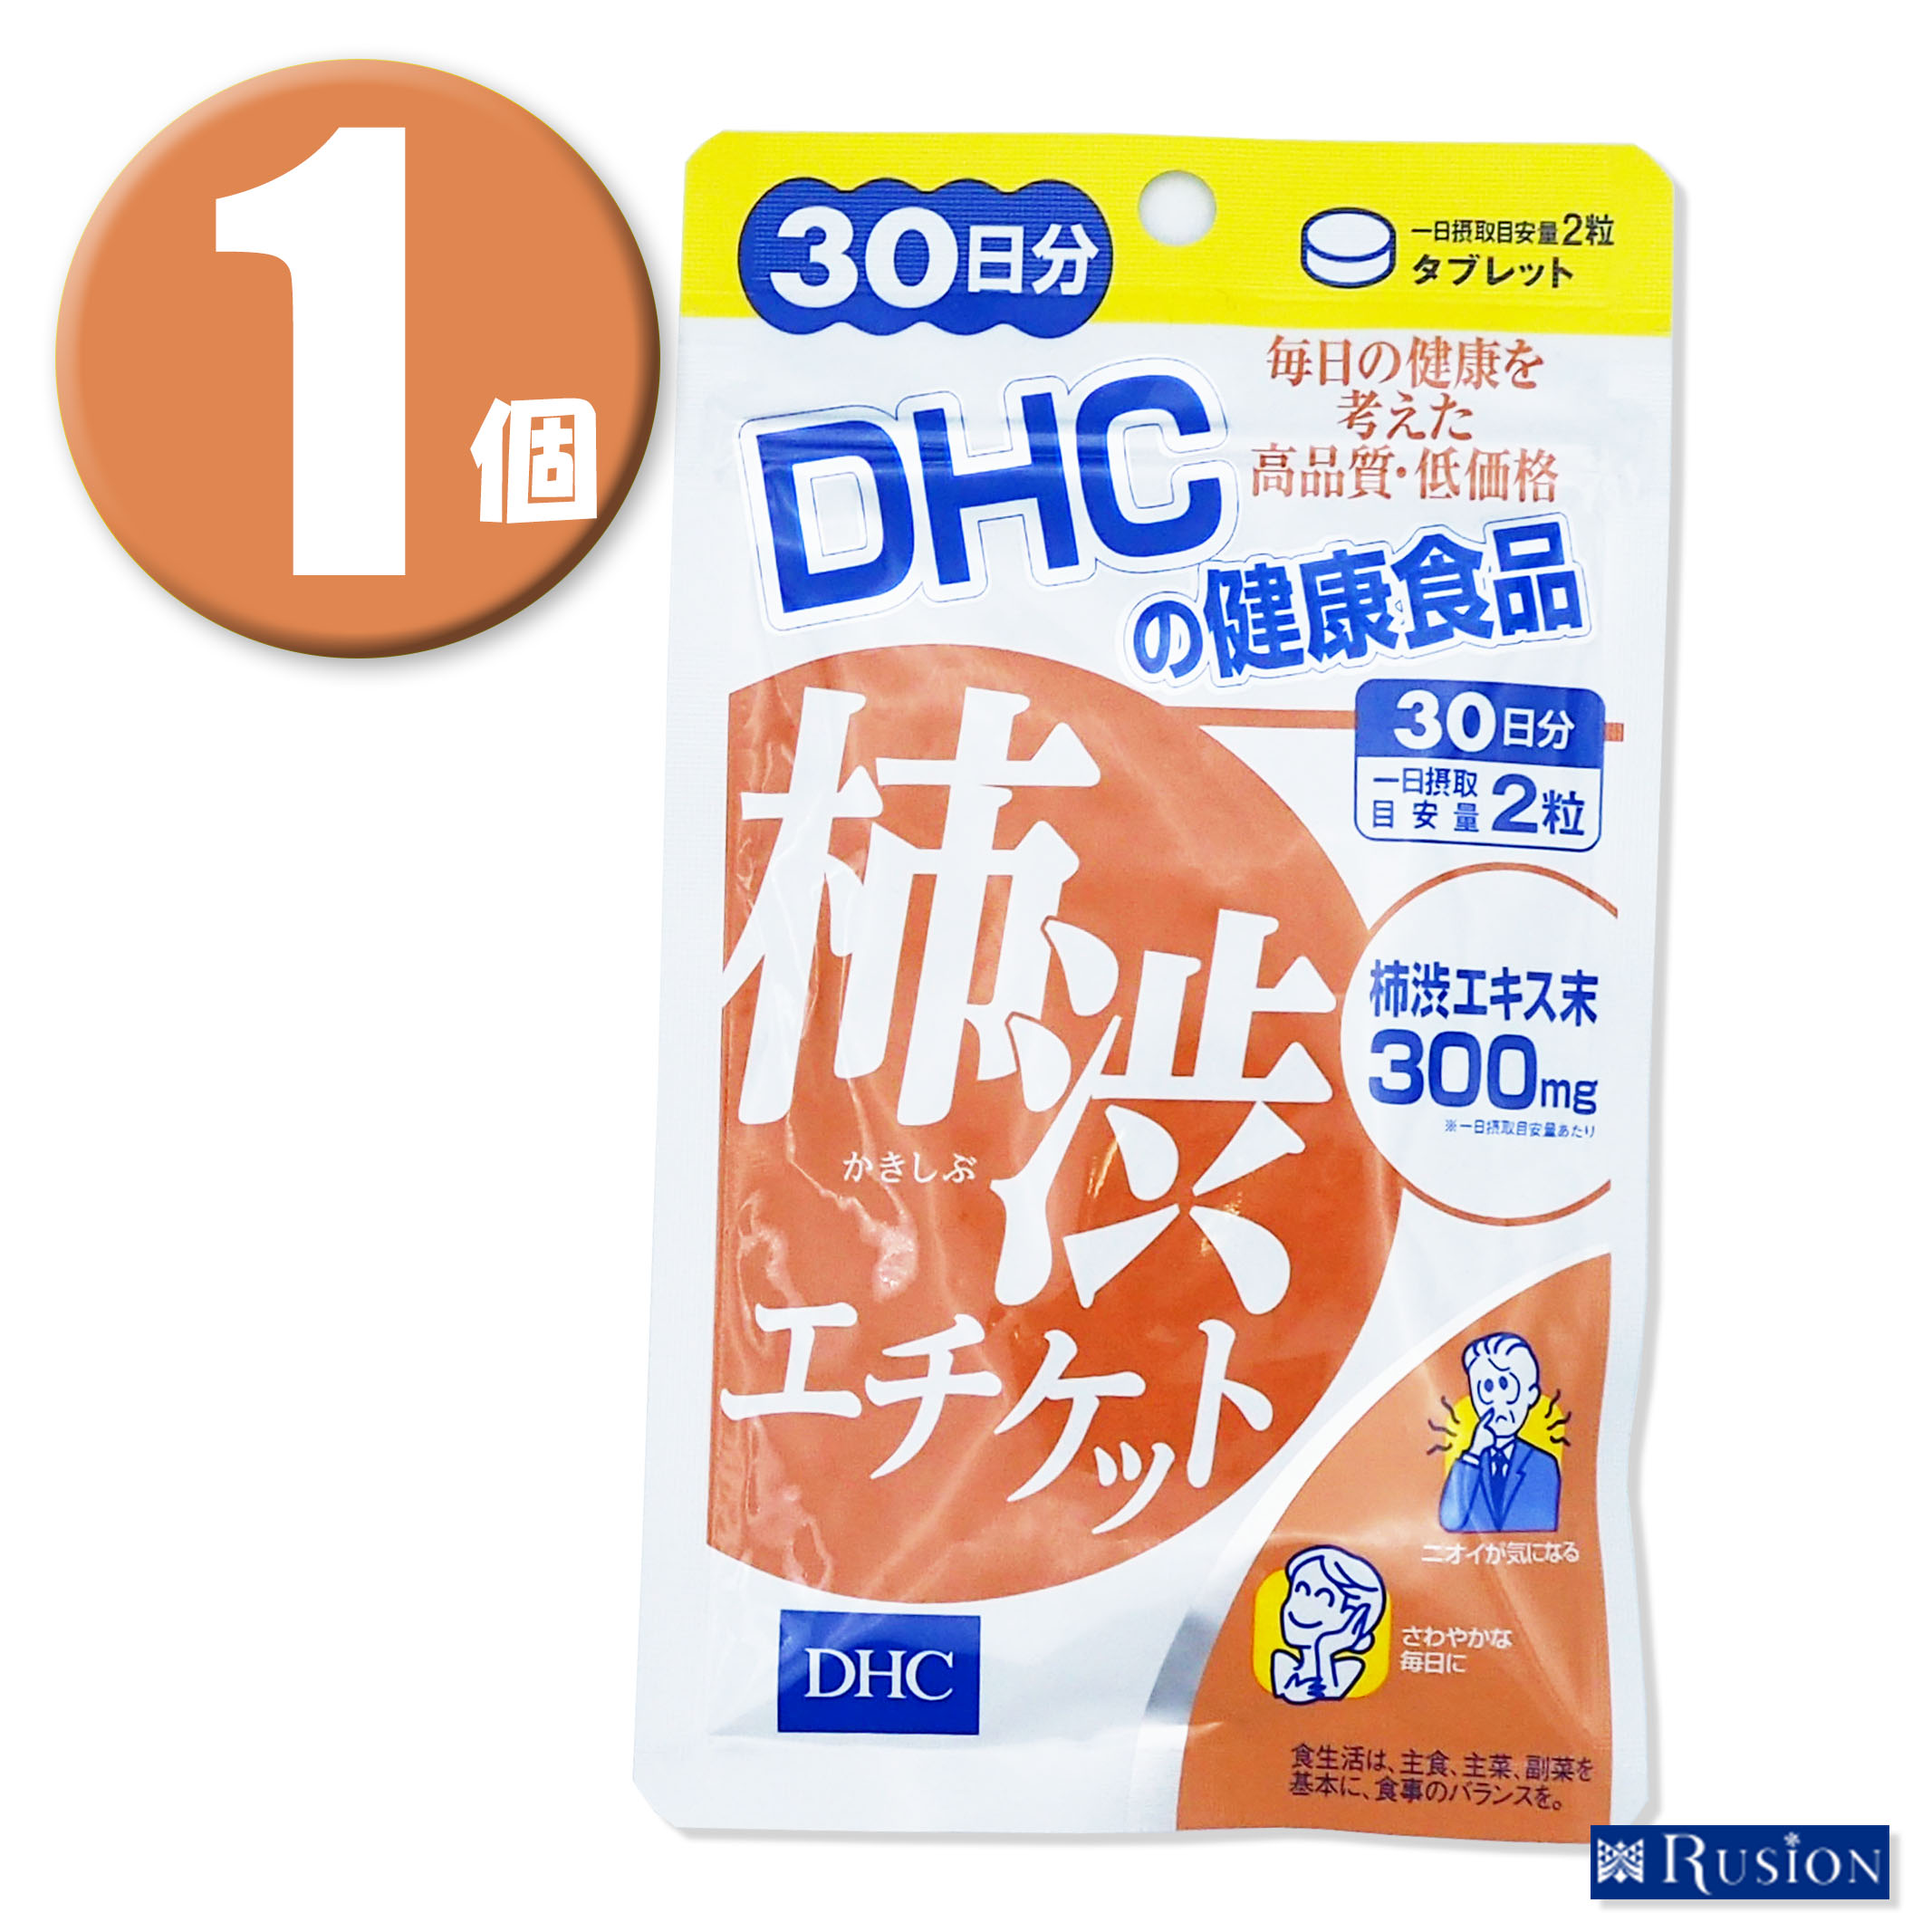 (1個) DHC サプリメント 柿渋エチケット 30日分 ディーエイチシー 健康食品 RUSION 